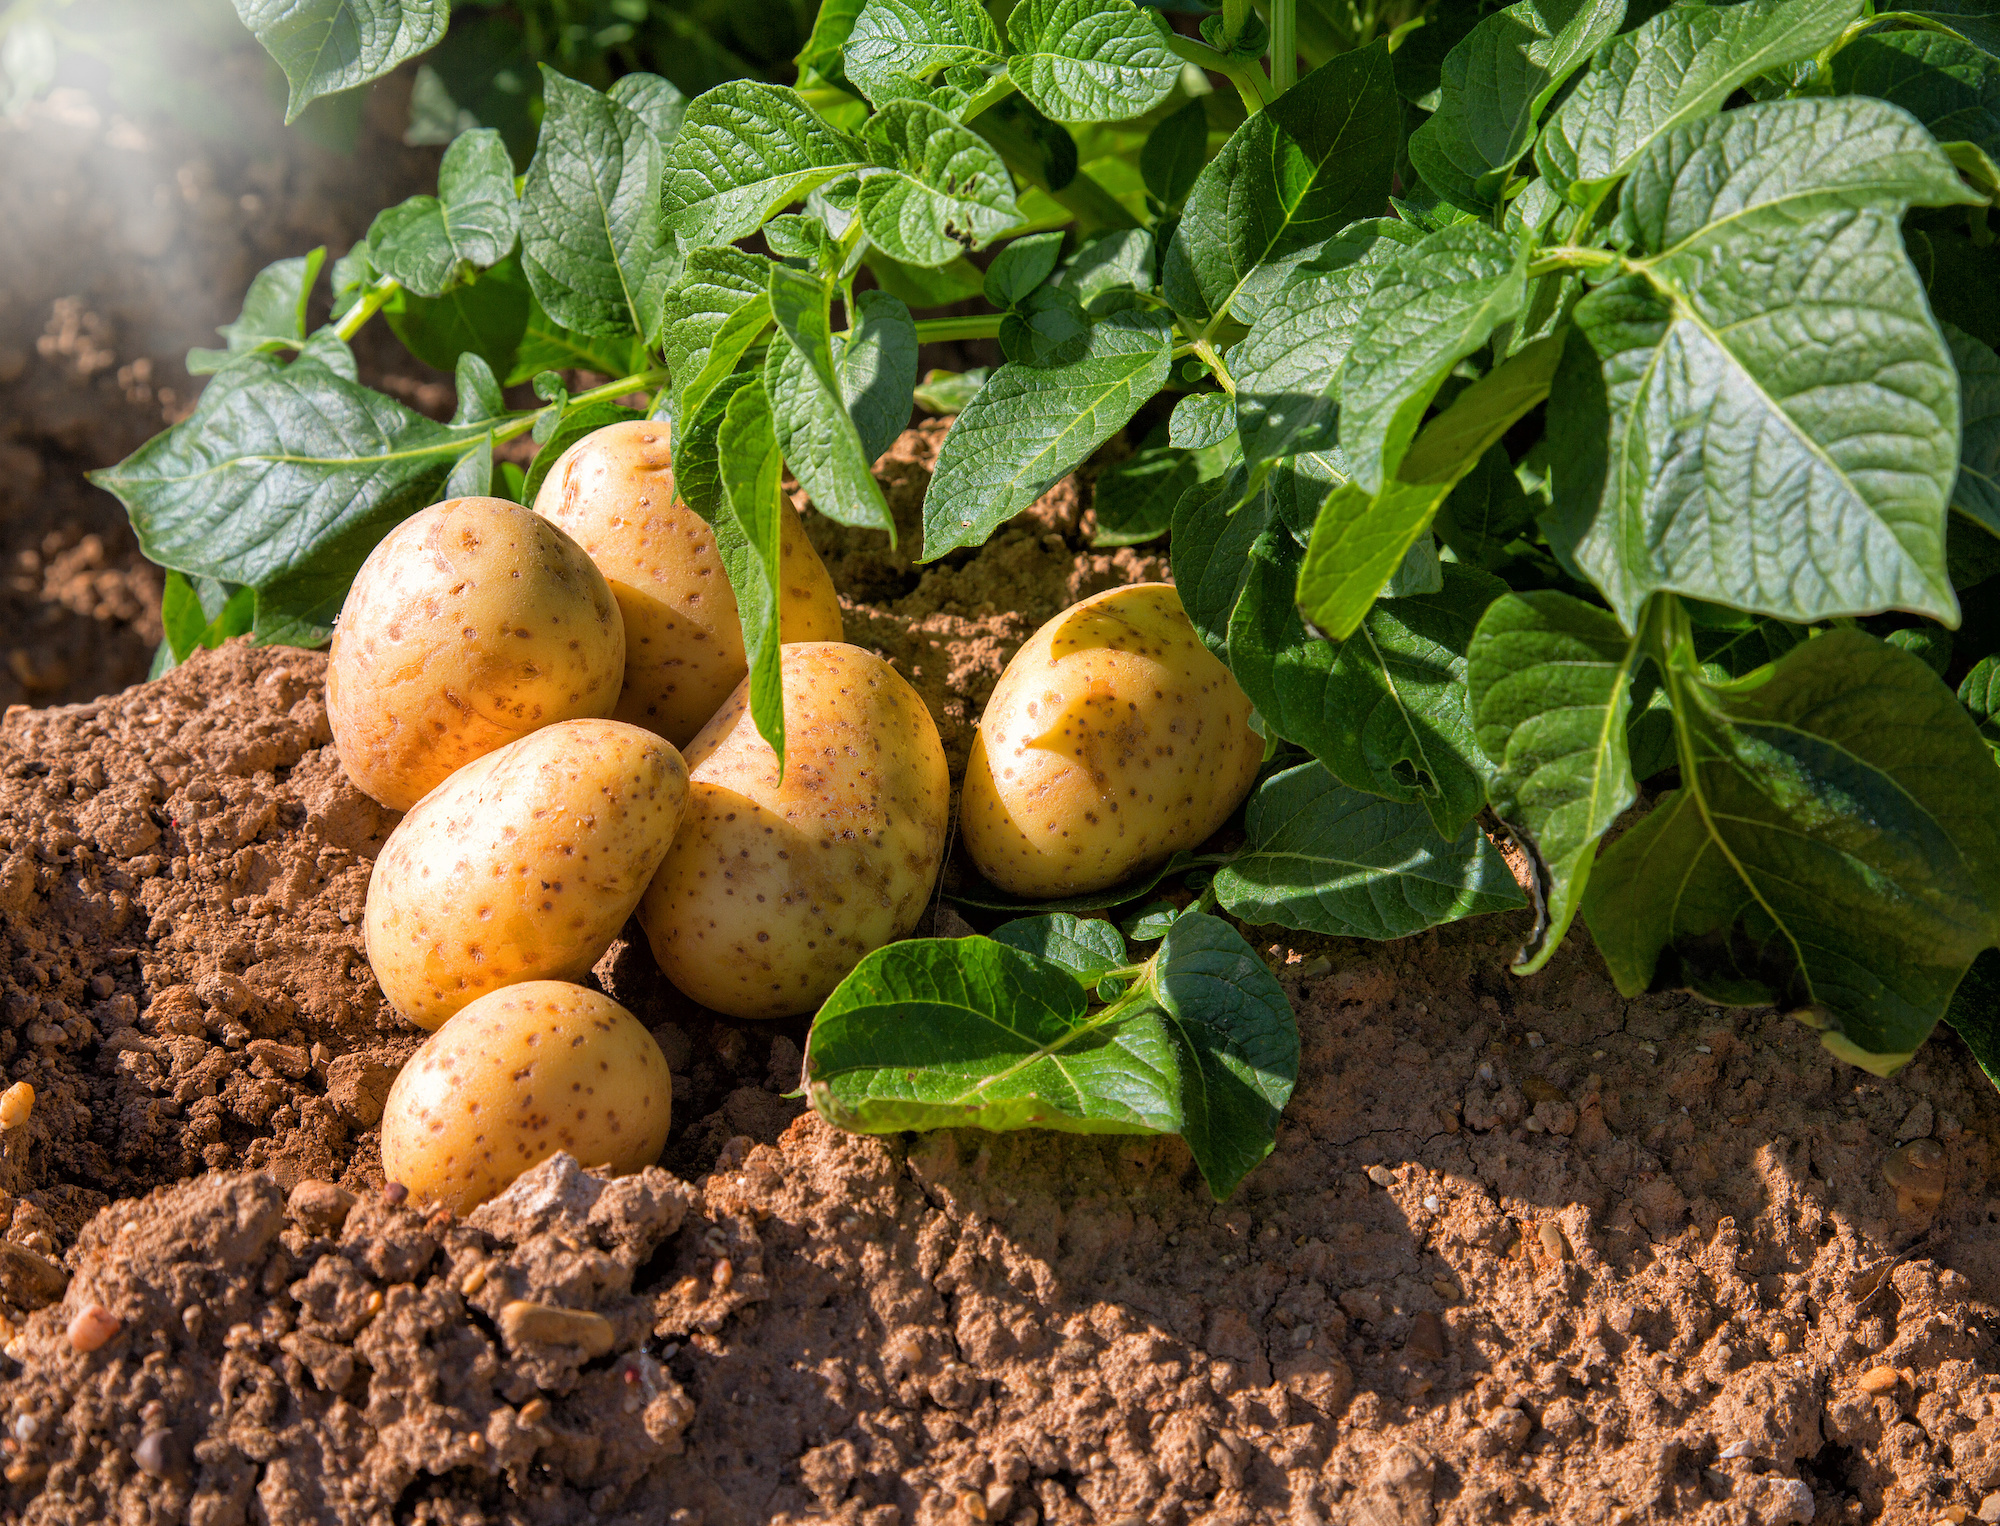 Schöne Kartoffeln mit weniger Pflanzenschutzmittel dank CRISPR/Cas9. (Bild: Adobe Stock)